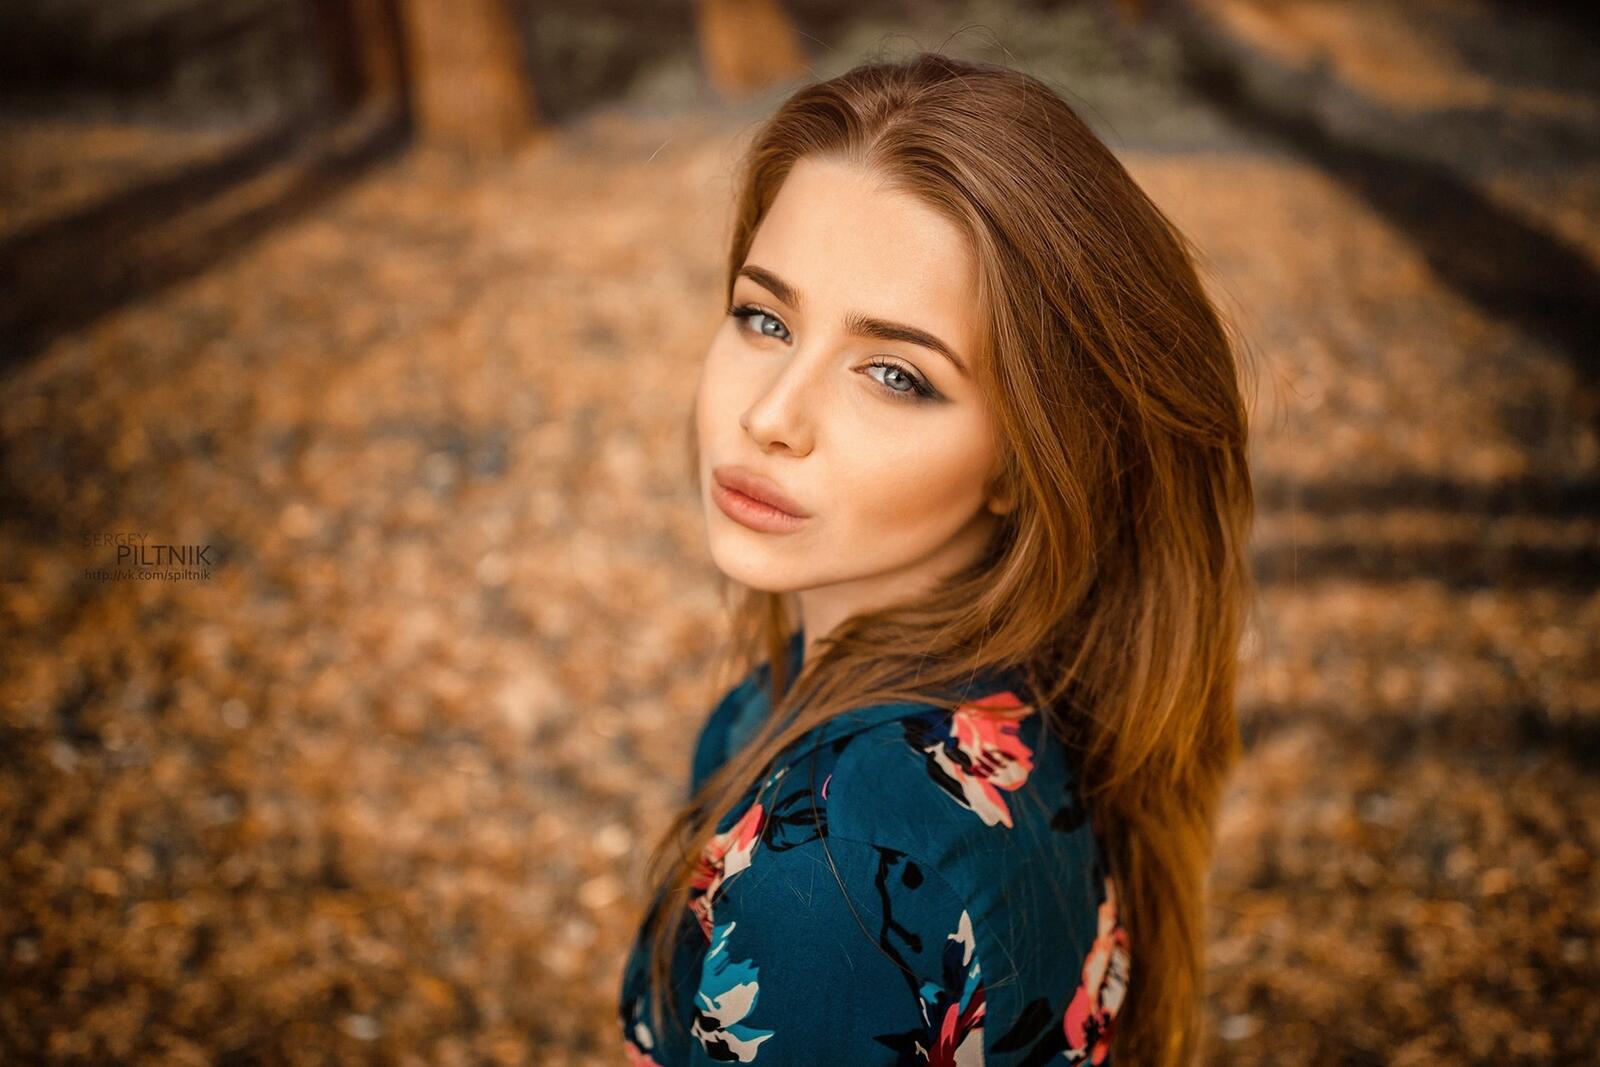 Бесплатное фото Рыжеволосая девушка делает селфи на природе осенью